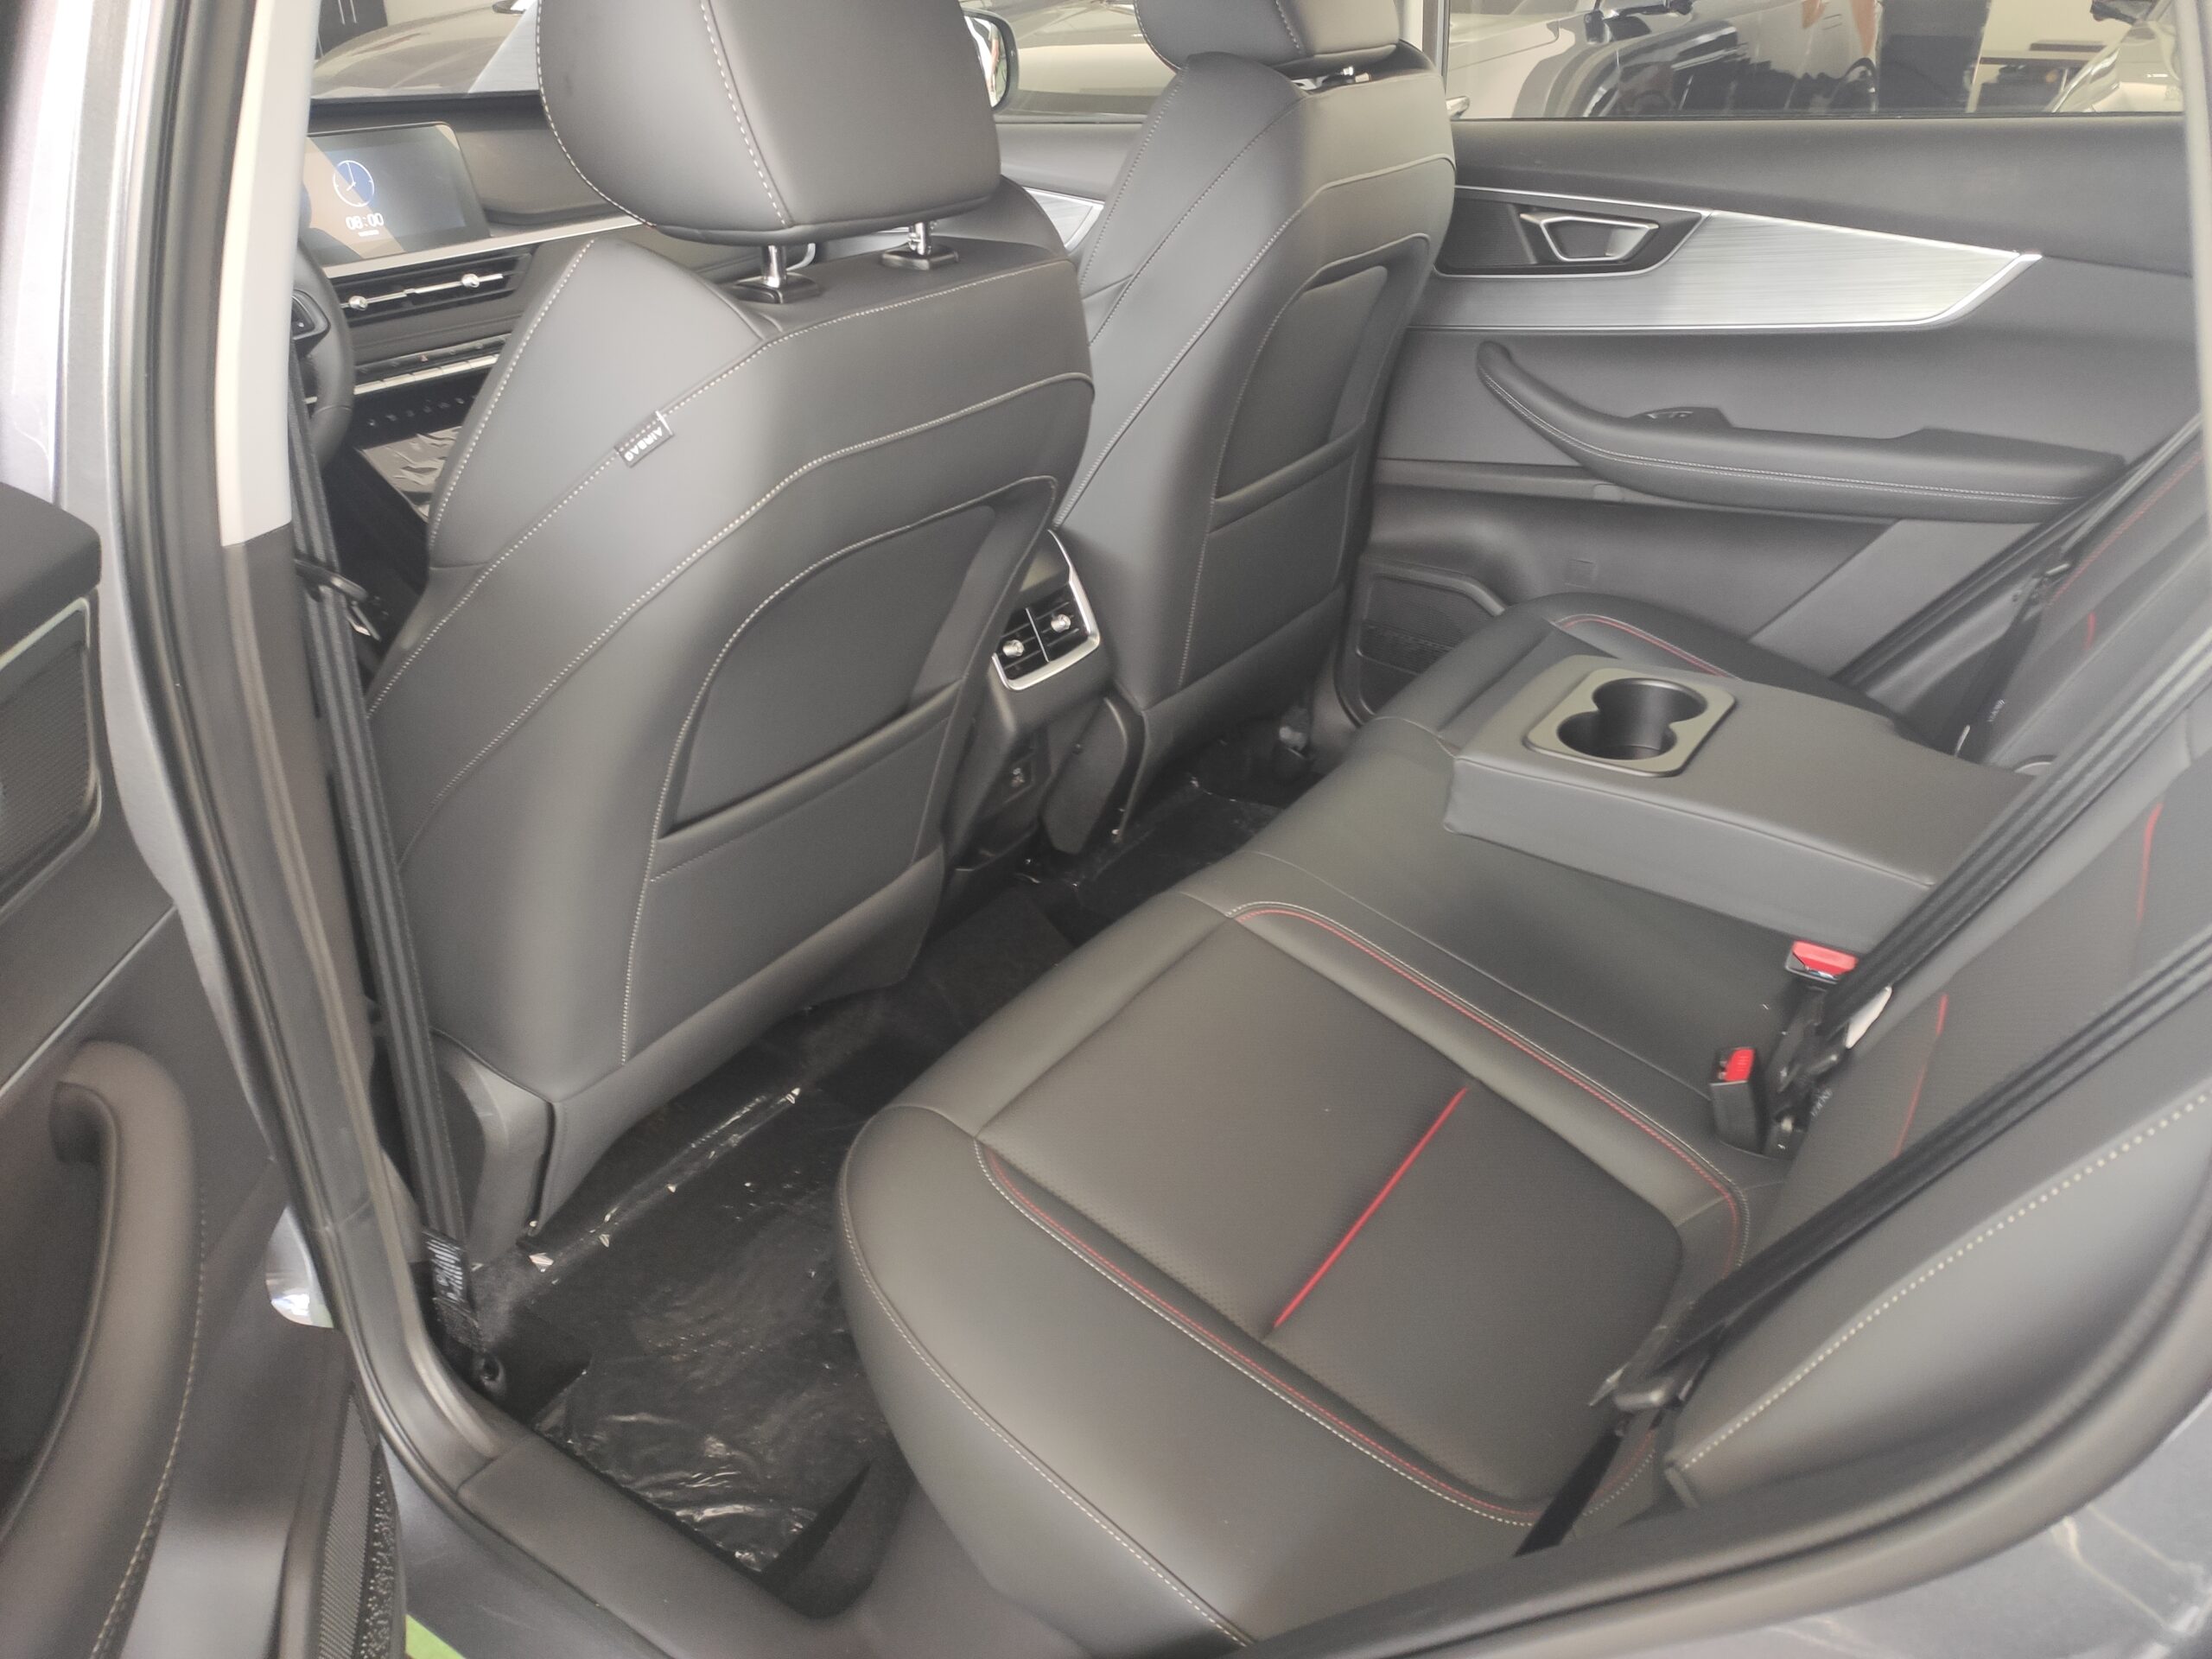 LADA XCITE X-CROSS 7 1.5 Turbo (147 л.с.) 2WD CVT. Enjoy. Серый. 2024